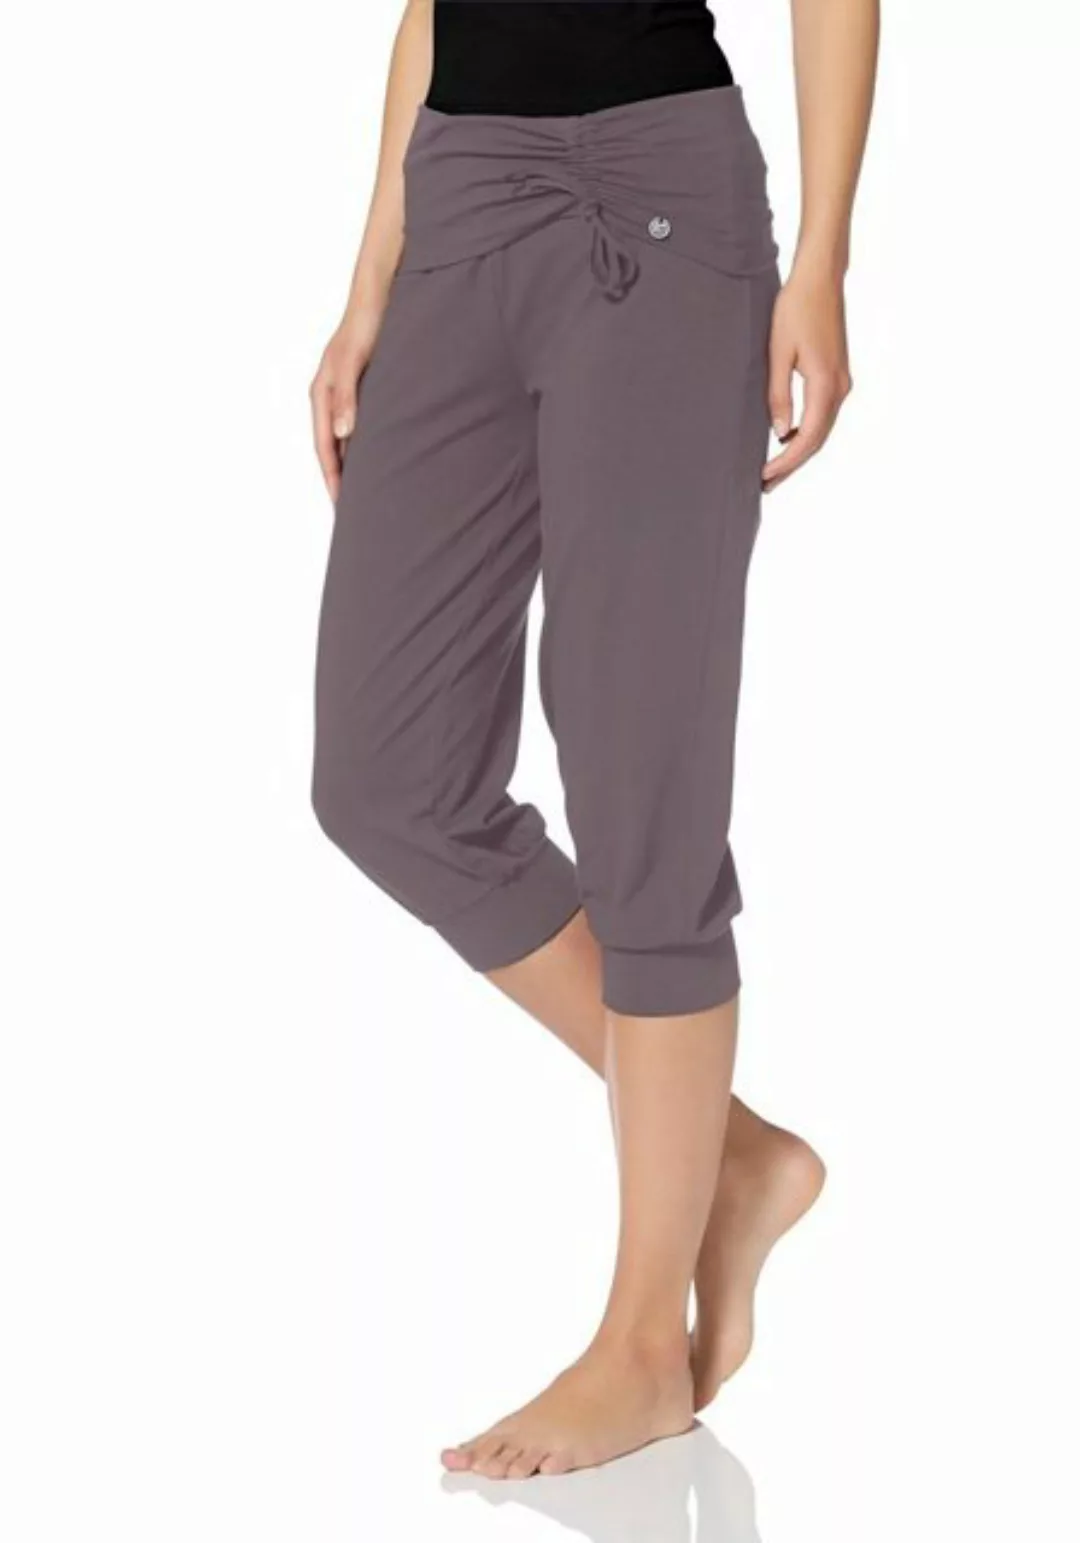 Ocean Sportswear Yogahose Soulwear - 3/4 Yoga Pants günstig online kaufen